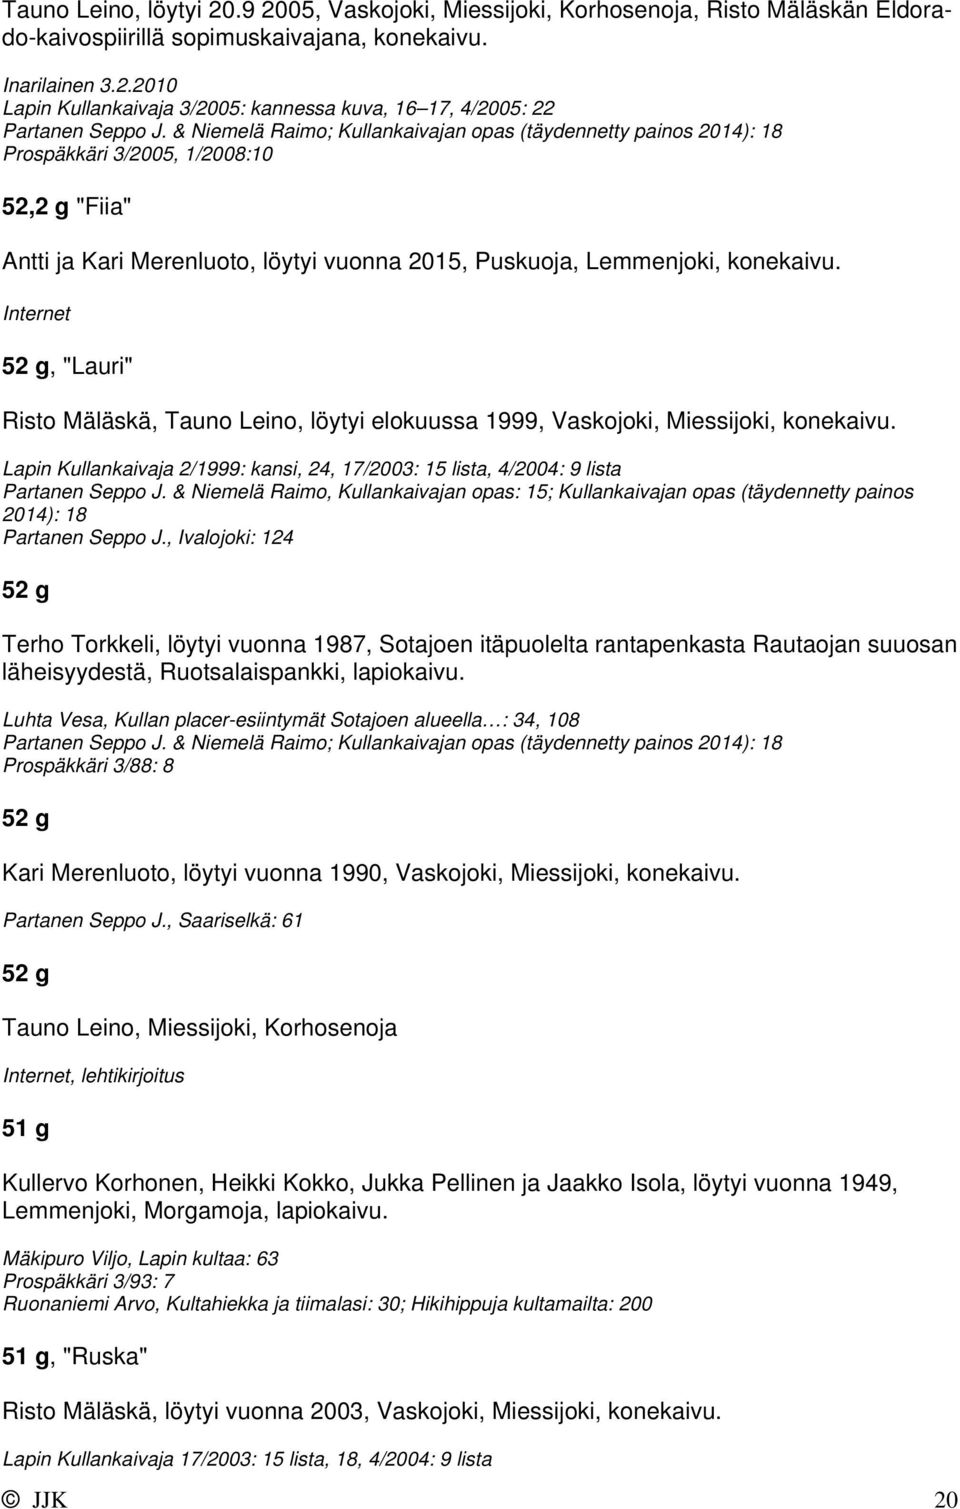 Internet 52 g, "Lauri" Risto Mäläskä, Tauno Leino, löytyi elokuussa 1999, Vaskojoki, Miessijoki, konekaivu. Lapin Kullankaivaja 2/1999: kansi, 24, 17/2003: 15 lista, 4/2004: 9 lista Partanen Seppo J.